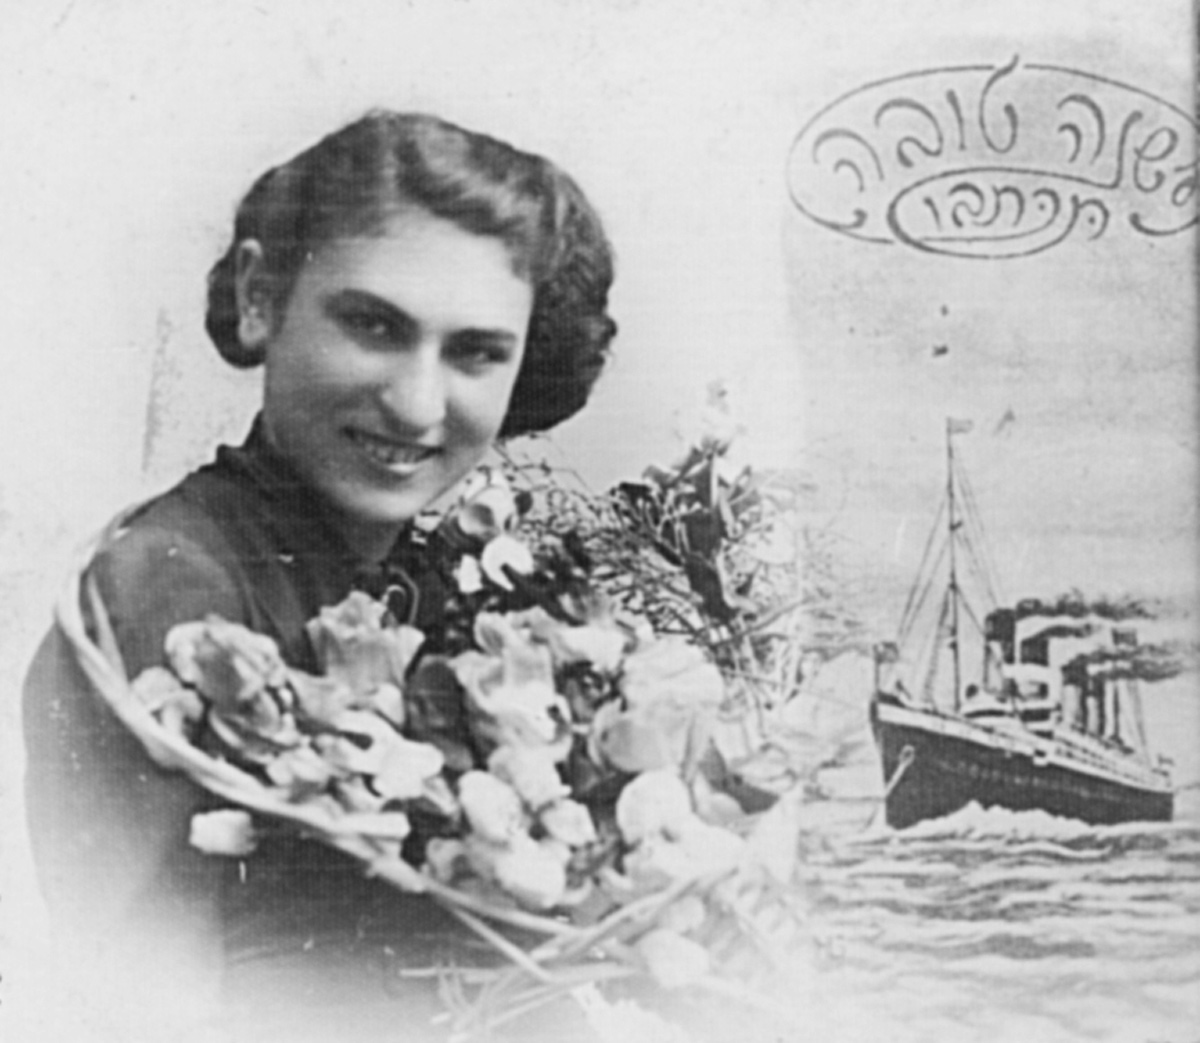 Carte de "Shana Tova" (Bonne année) envoyée avec son portrait par Henia Lubliner de Siedllce, Pologne, à sa sœur Esther Herz (plus tard Kermersh-Cnaani) en Eretz Israël (Palestine mandataire) avant la guerre